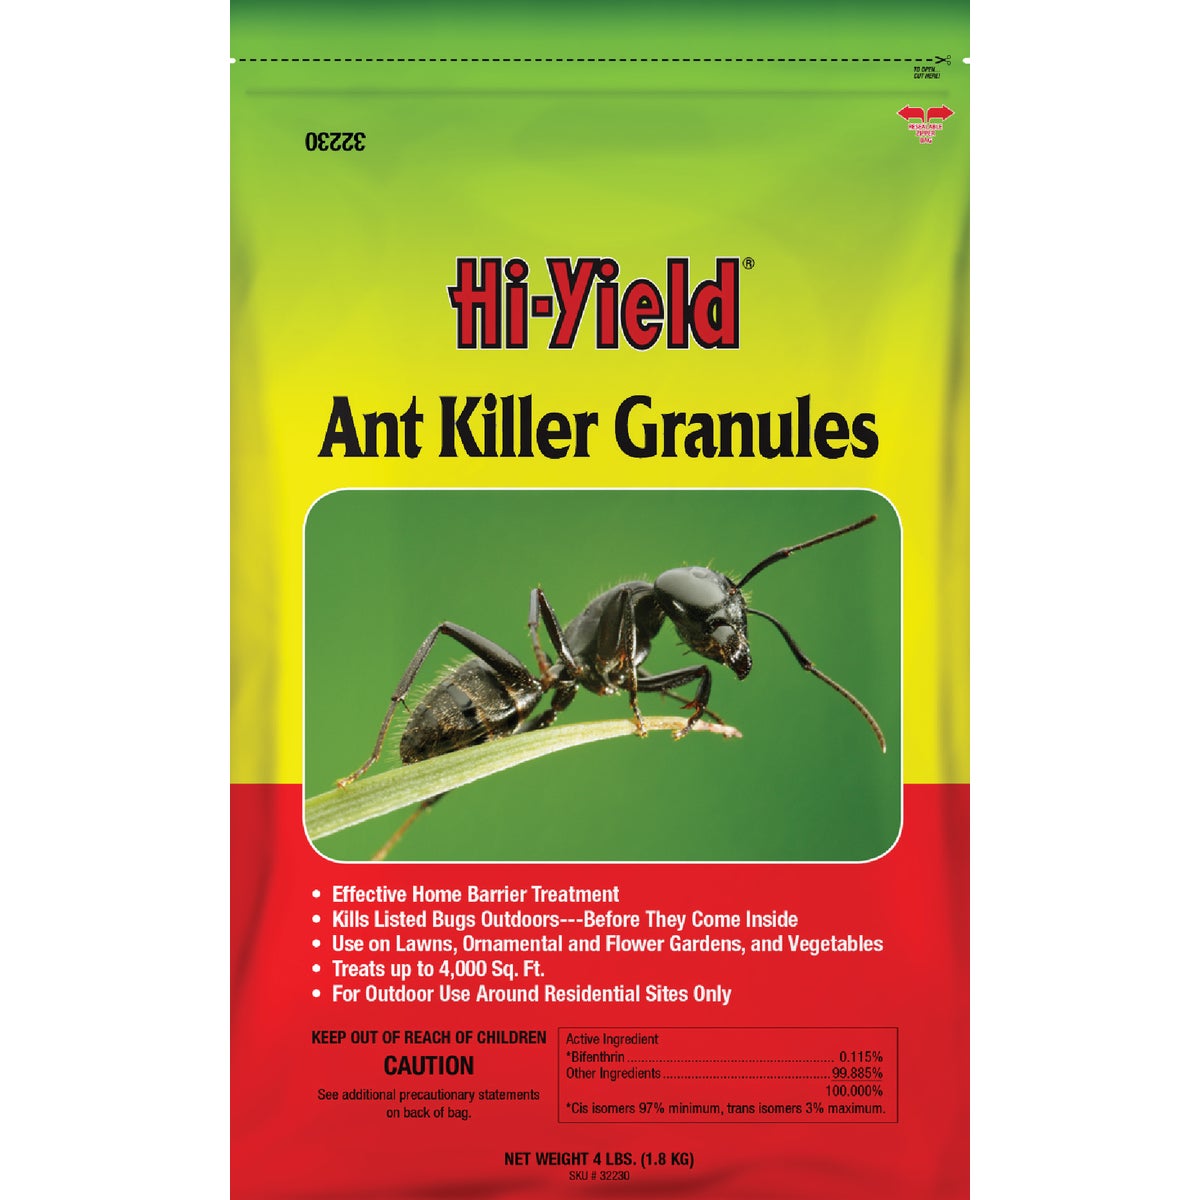 Item 703429, Hi-Yield ant killer granules.